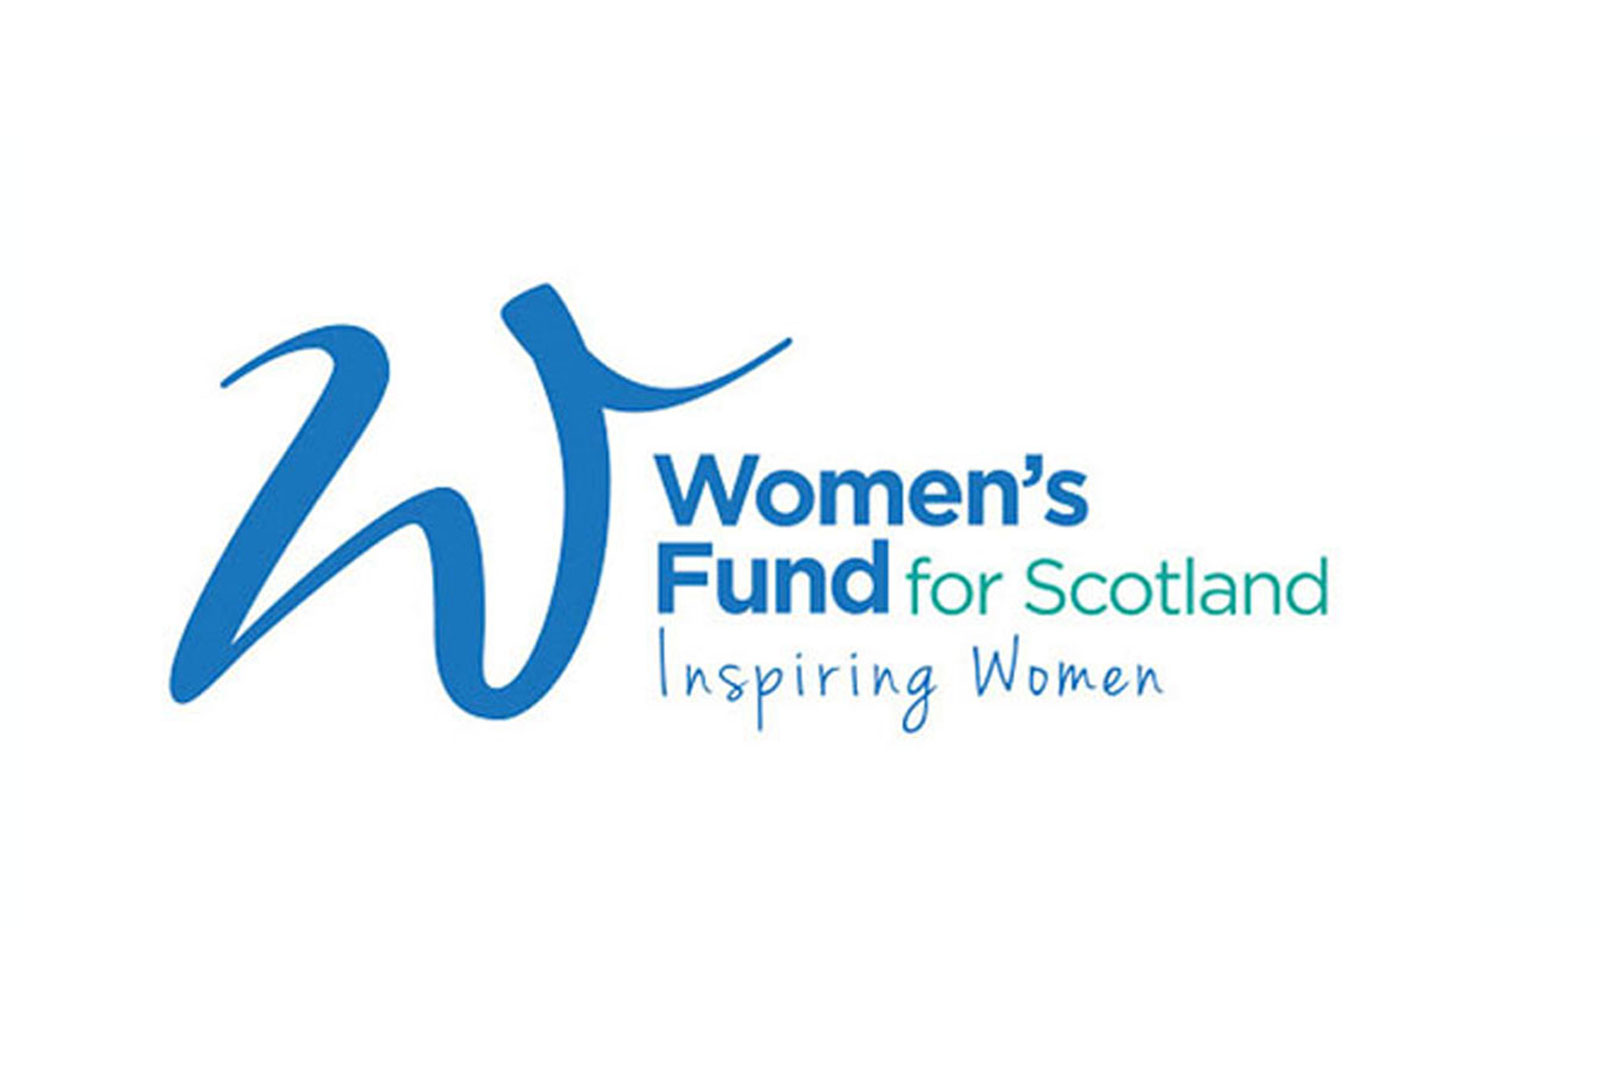 Womens Fund for Scotland logo